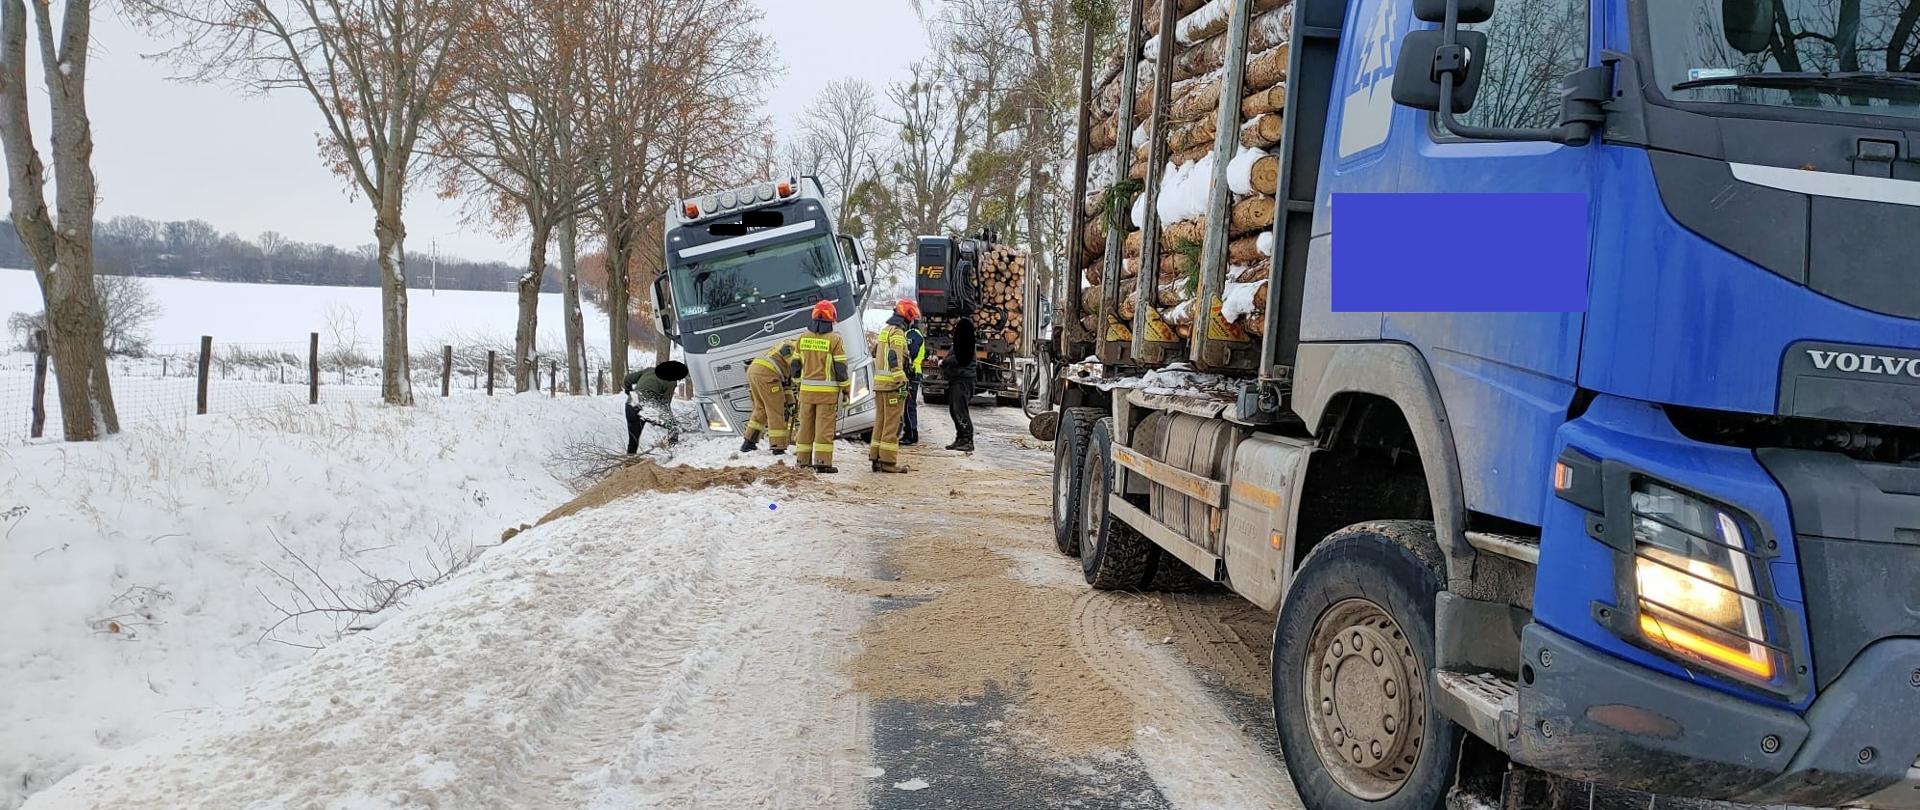 Zima, dużo śniegu. Na zdjęciu biała ciężarówka częściowo w rowie z prawej strony stoi niebieska ciężarówka z drzewem.